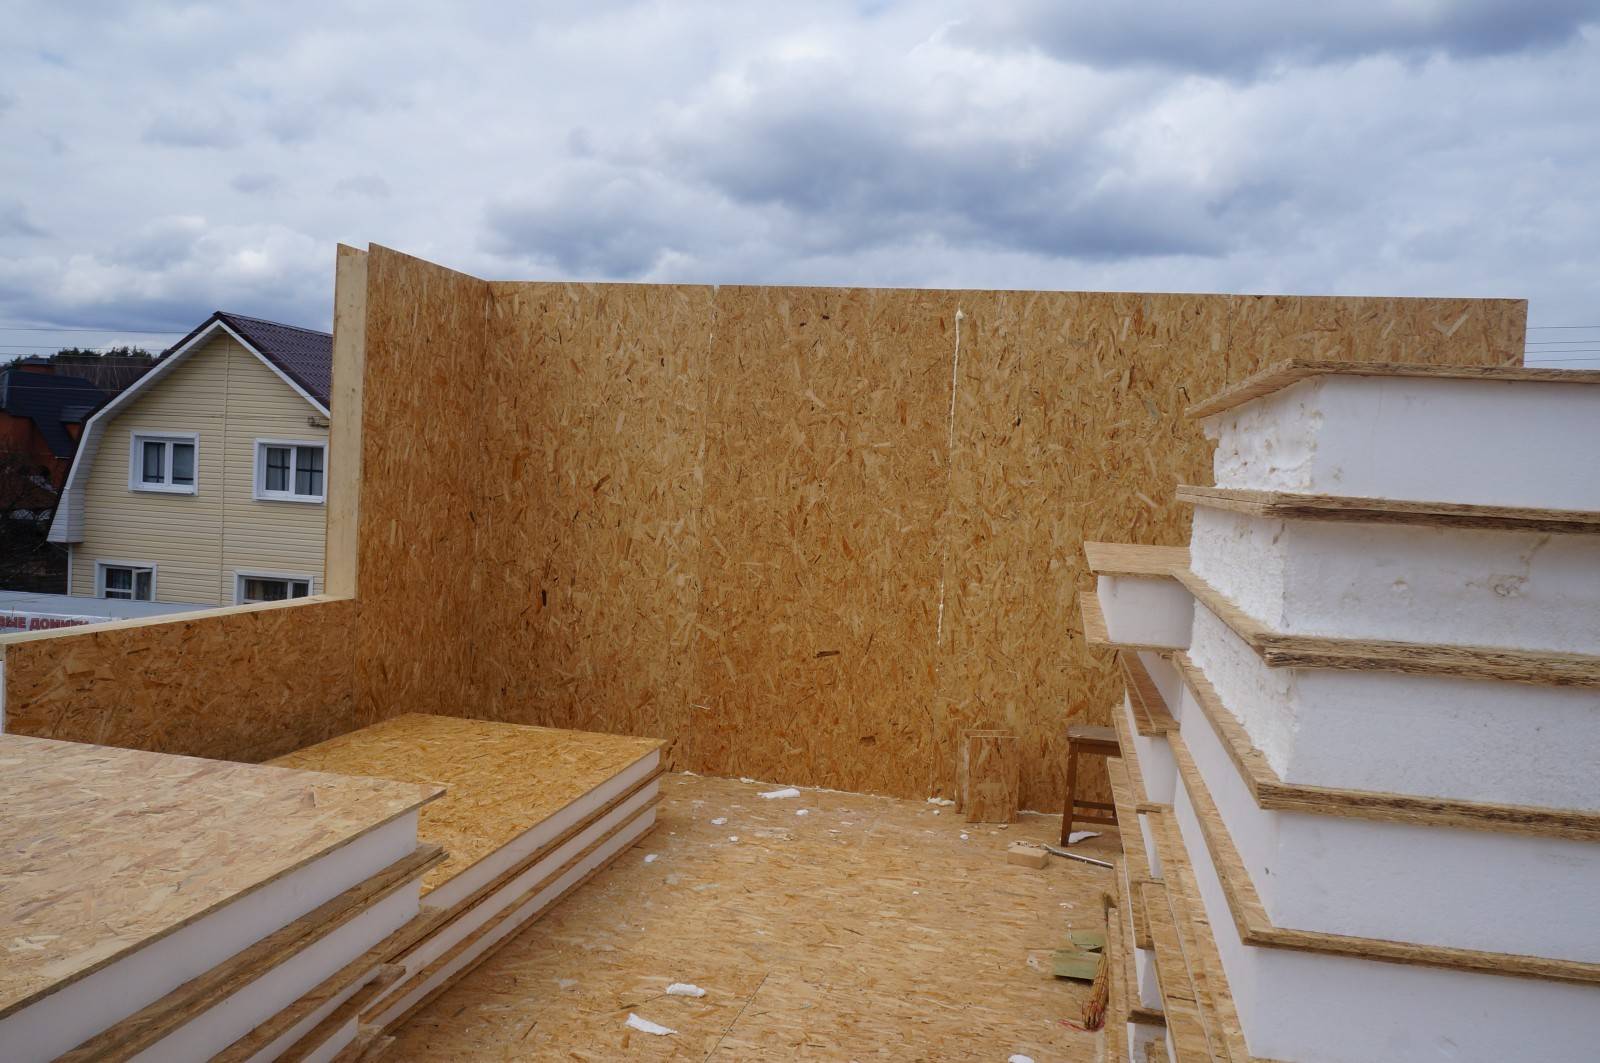 Бесфундаментное строительство — можно ли строить дом без фундамента